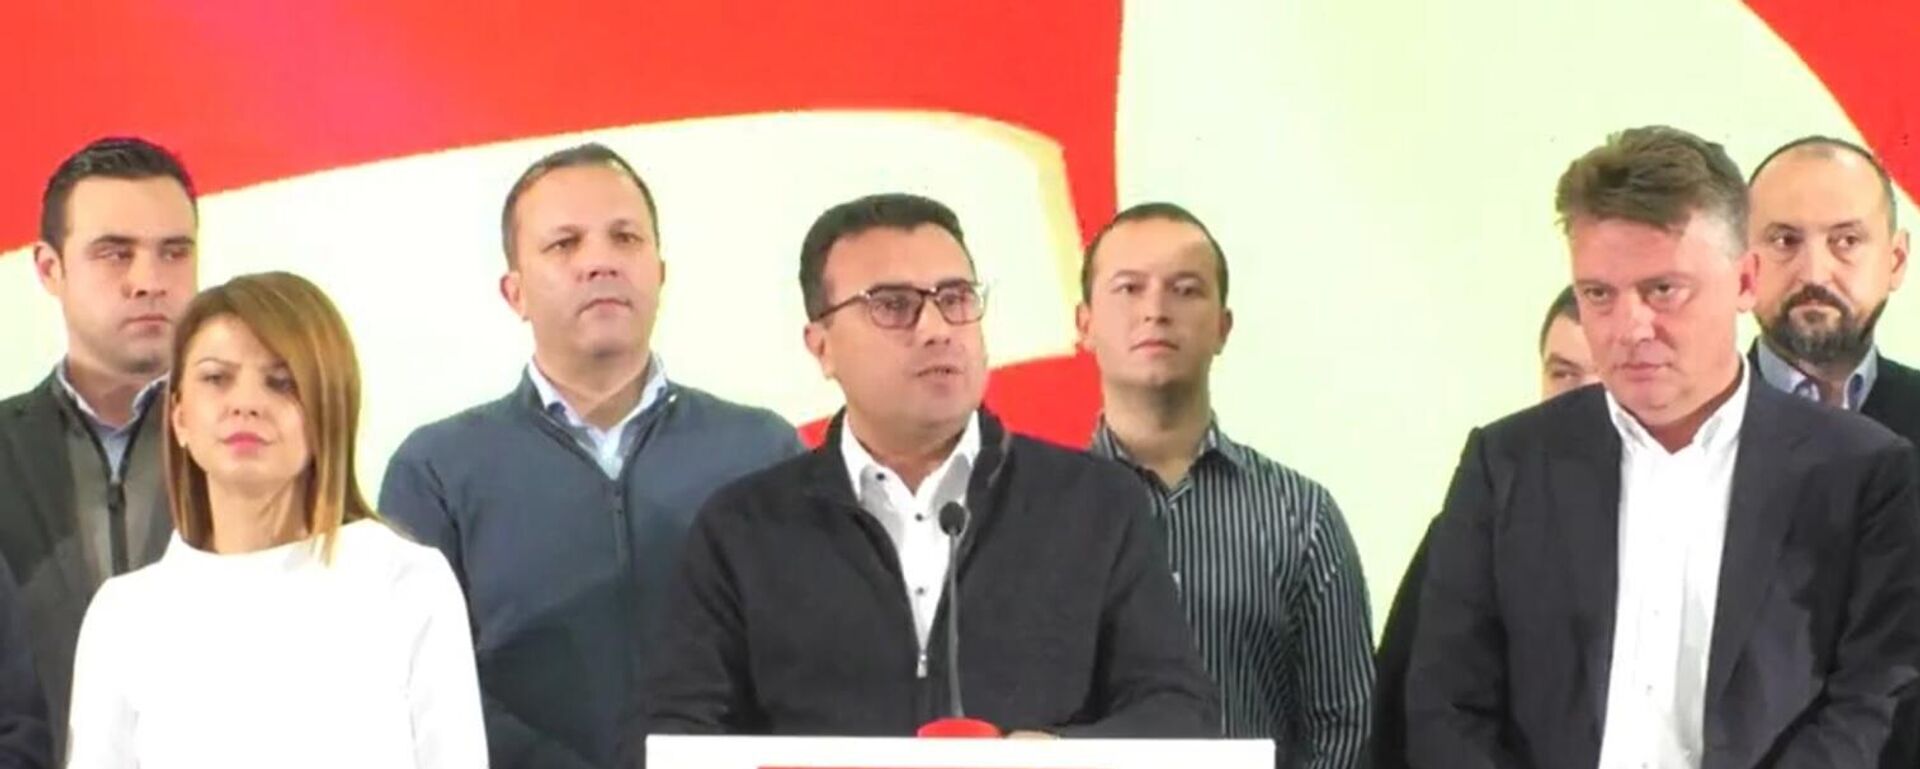 Zoran Zaev podnosi ostavku na mesto premijera Severne Makedonije posle lokalnih izbora - Sputnik Srbija, 1920, 31.10.2021